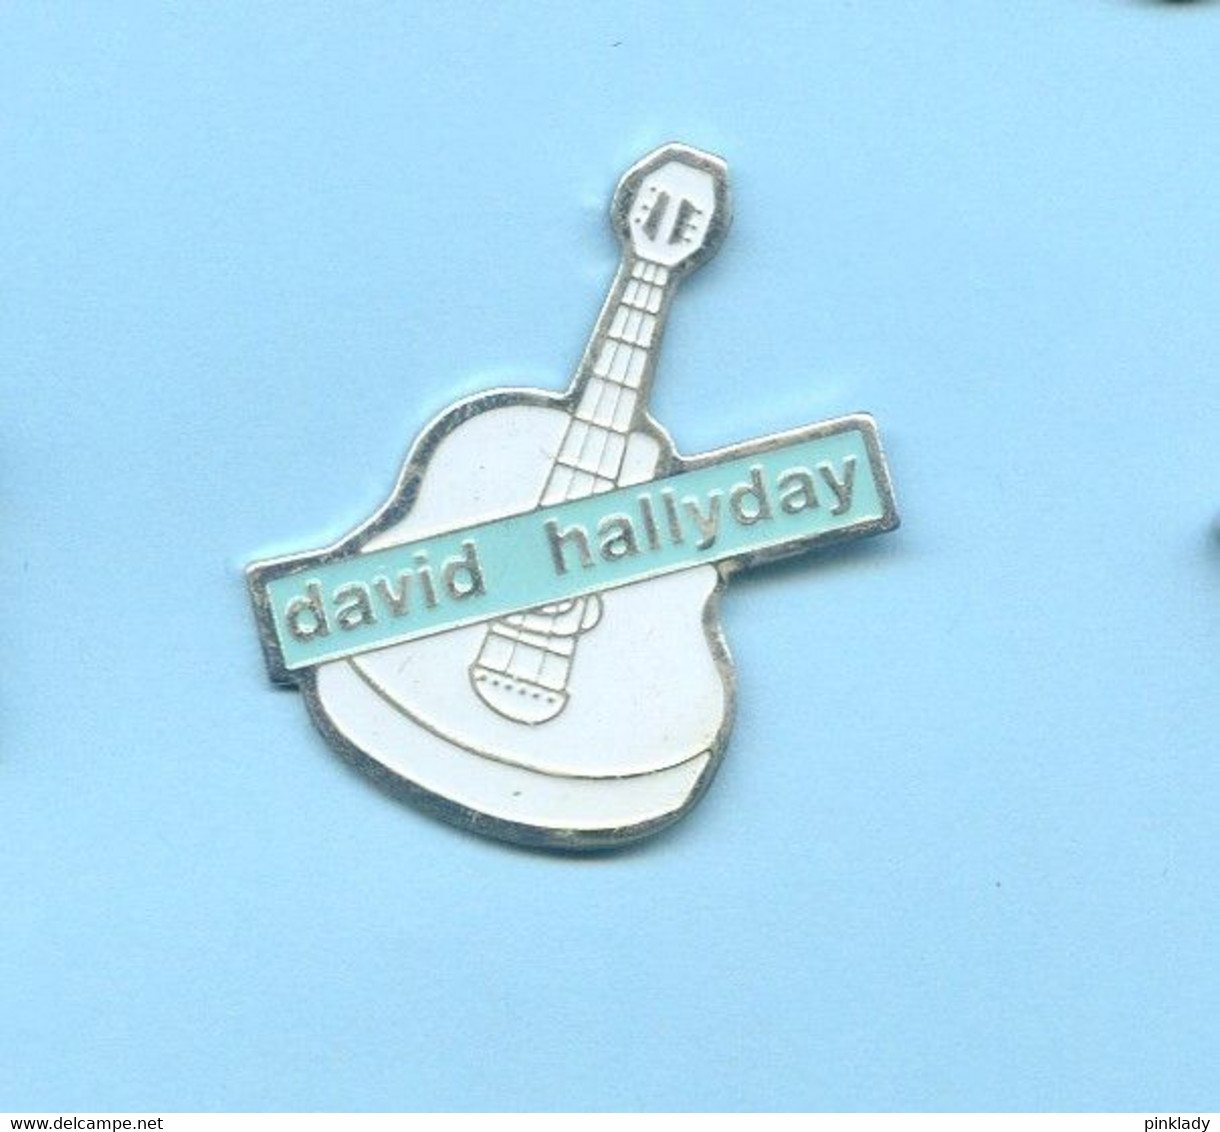 Rare Pins David Hallyday Guitare G213 - Música